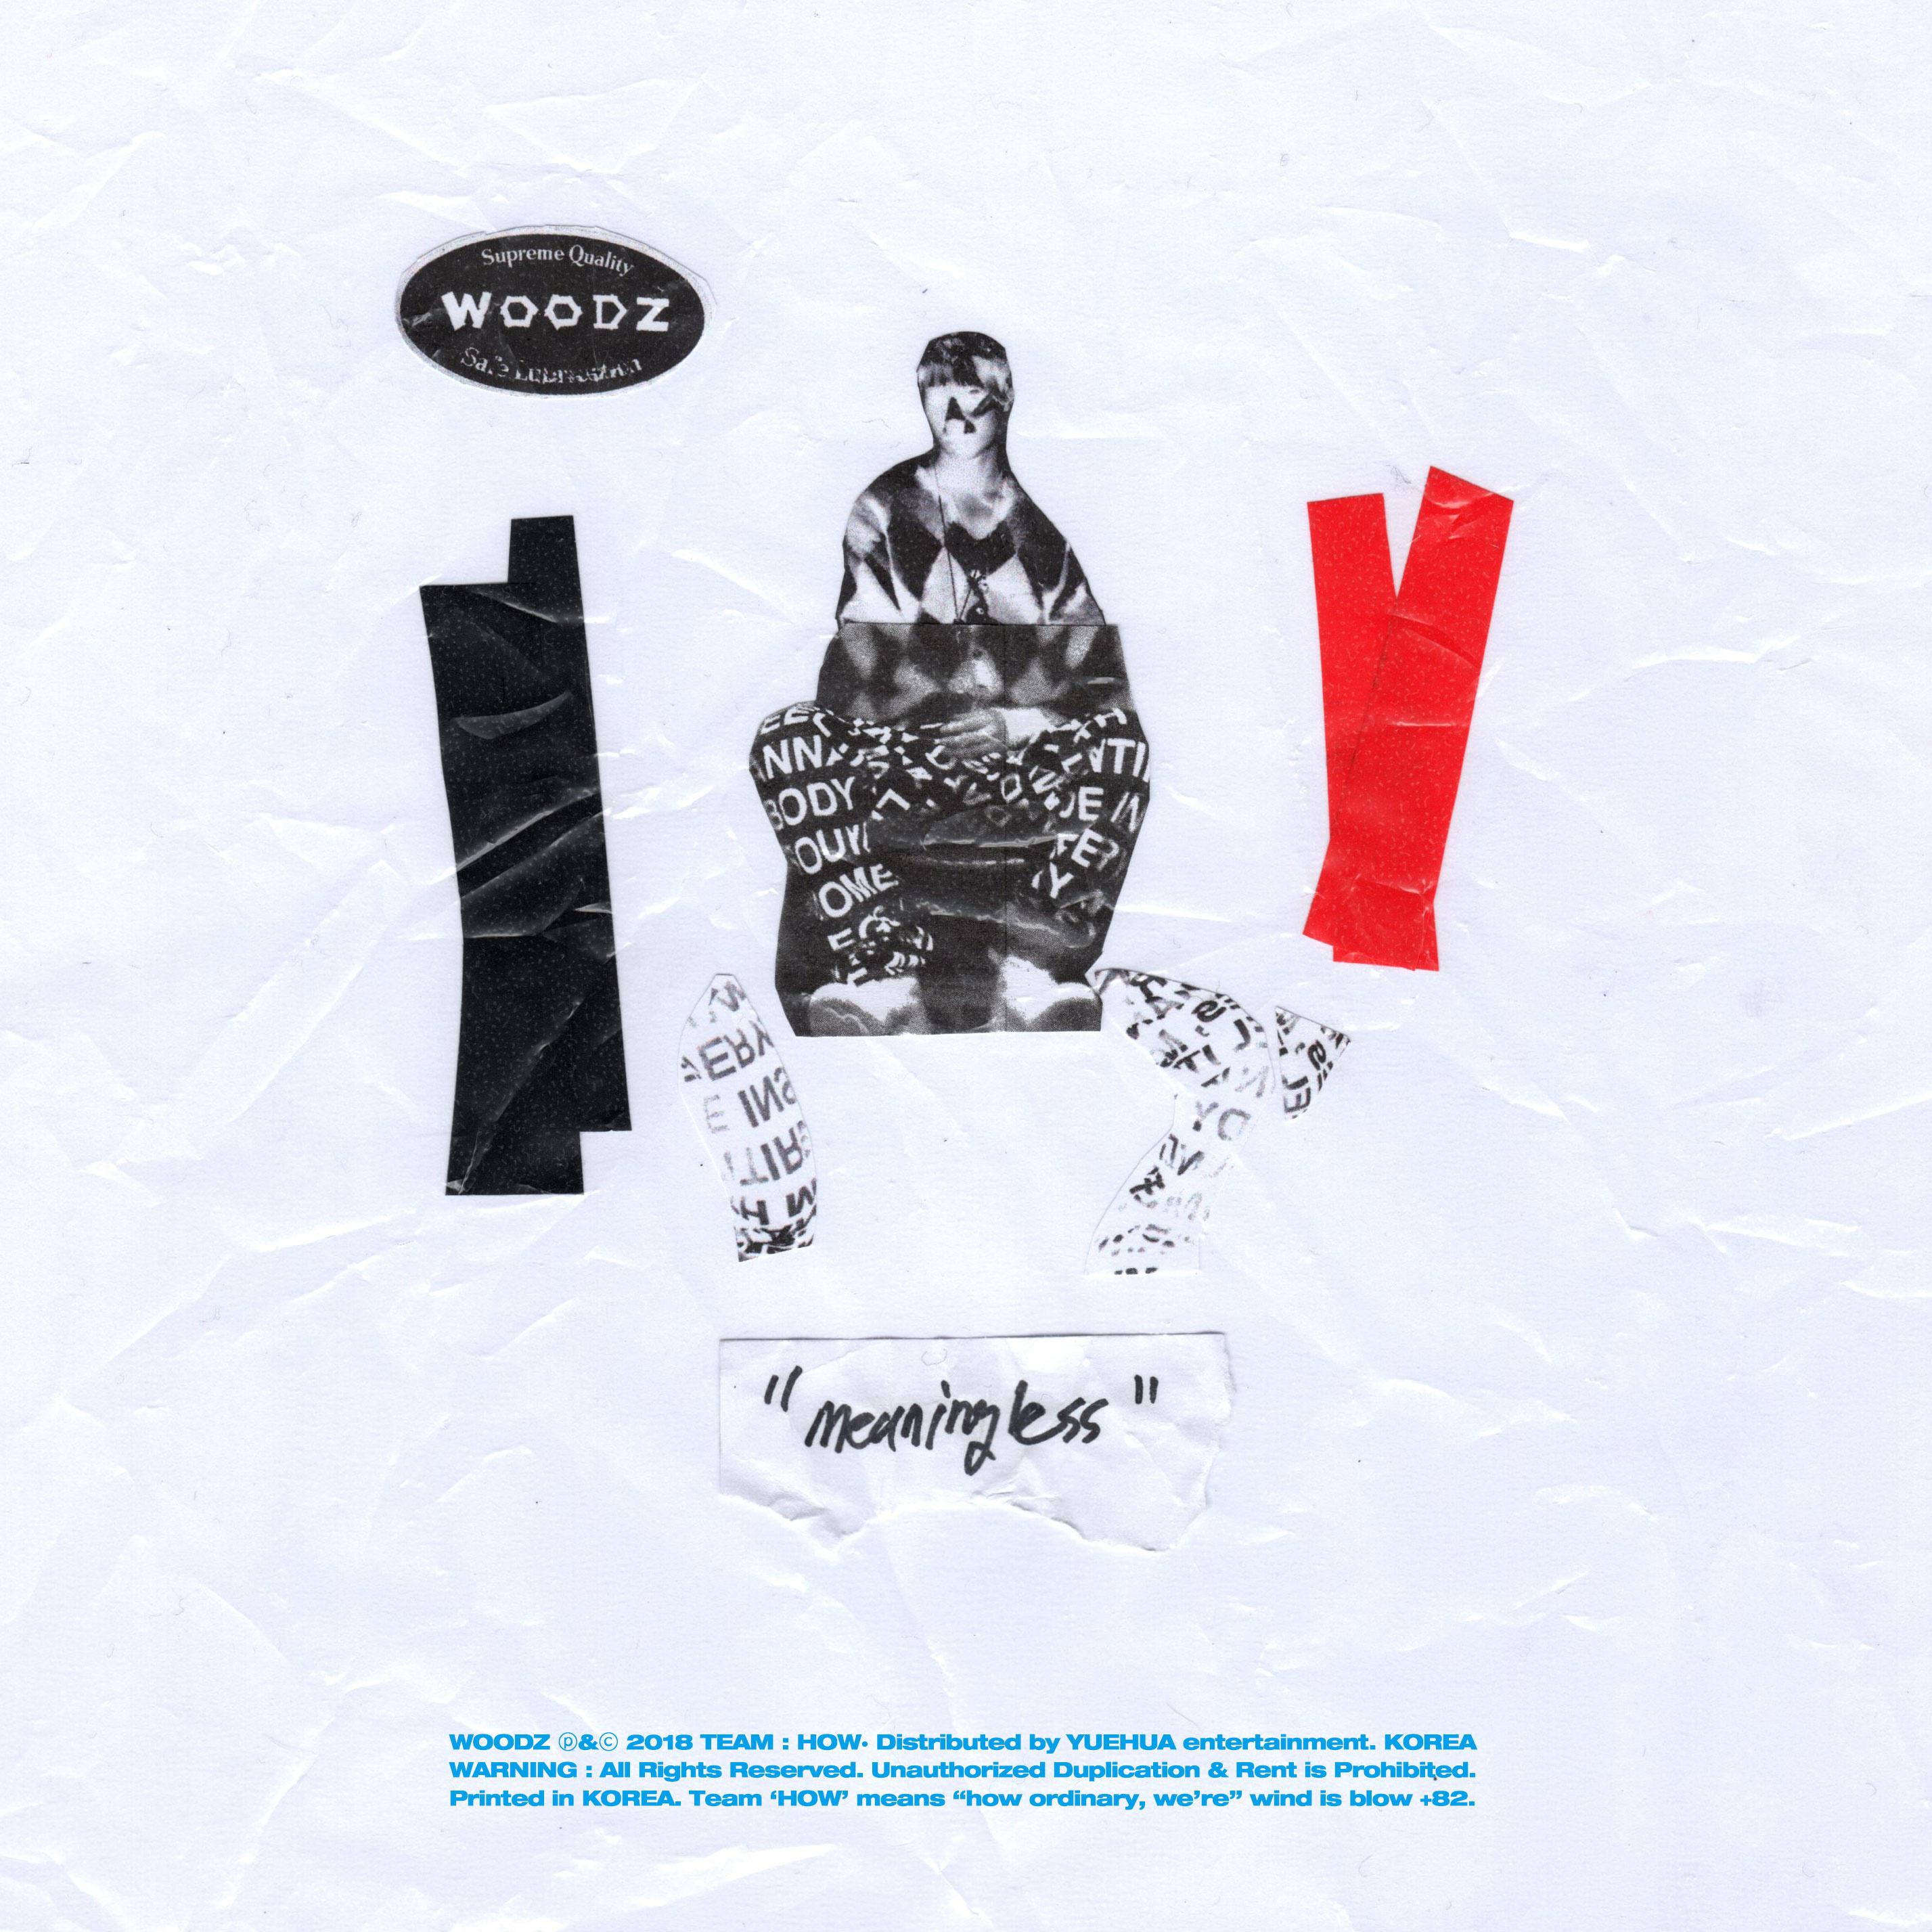 아무의미 (Meaningless)歌词 歌手WOODZ-专辑아무의미 (Meaningless)-单曲《아무의미 (Meaningless)》LRC歌词下载